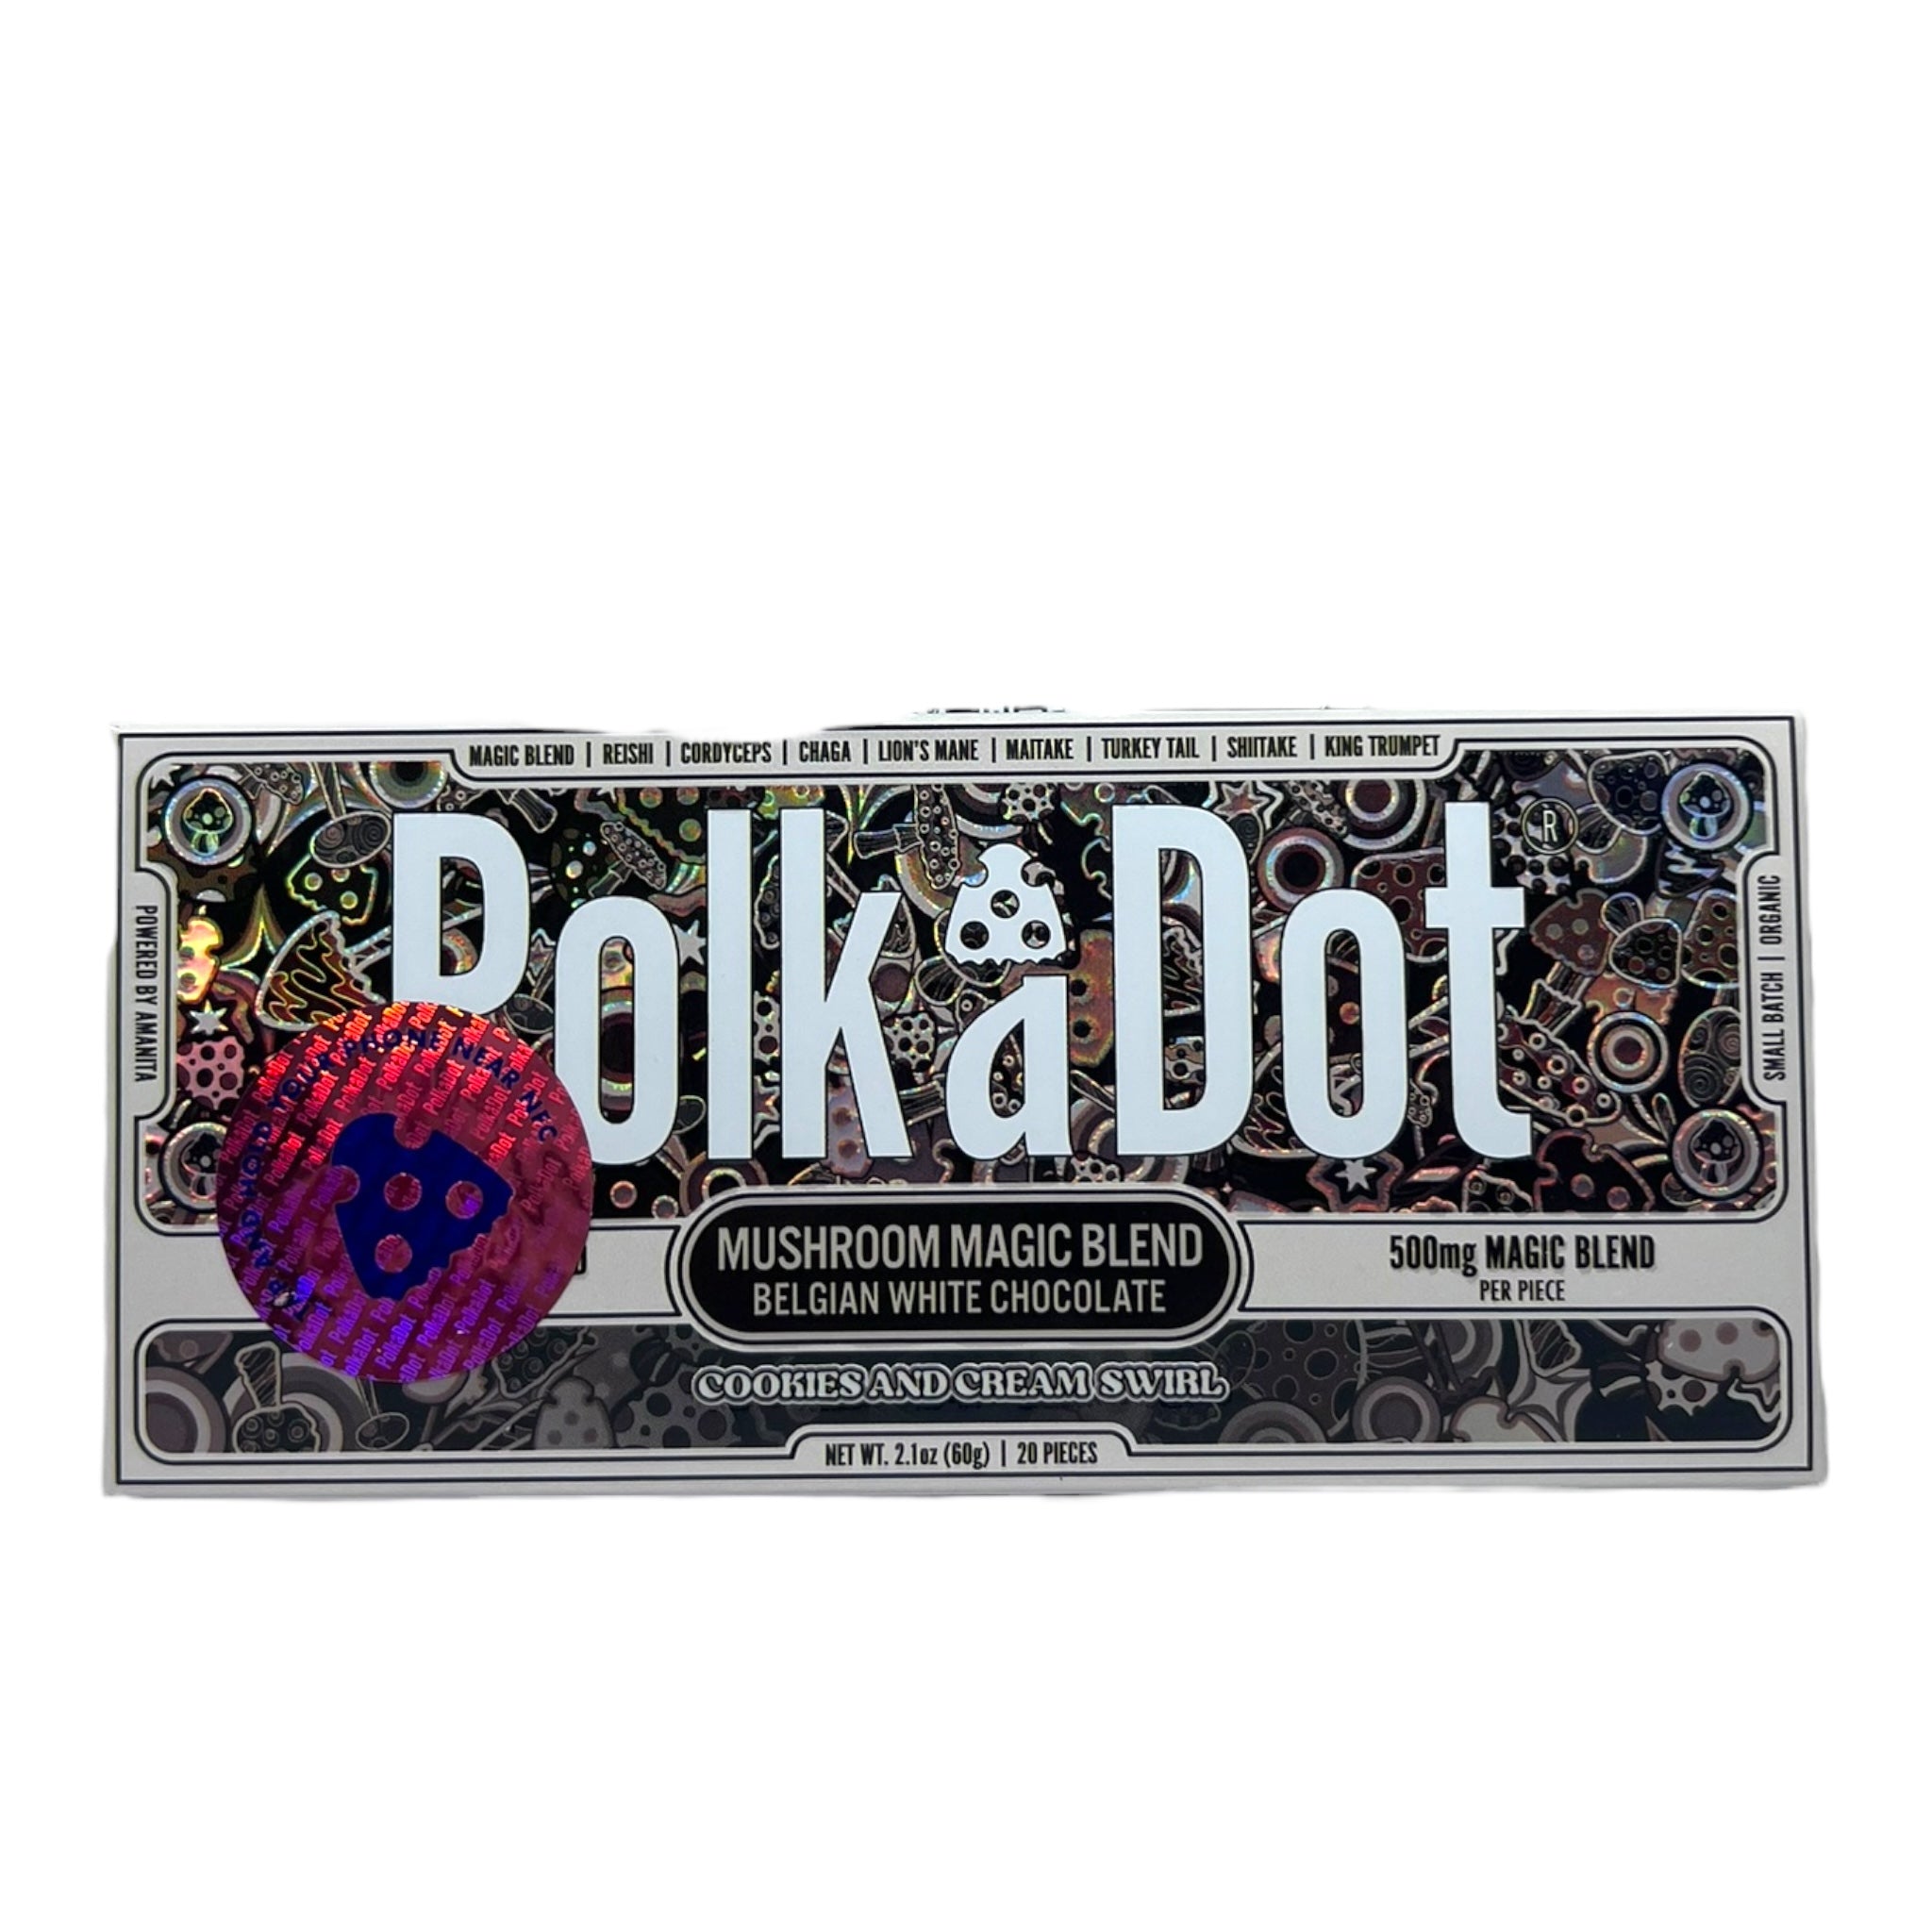 Polka Dot